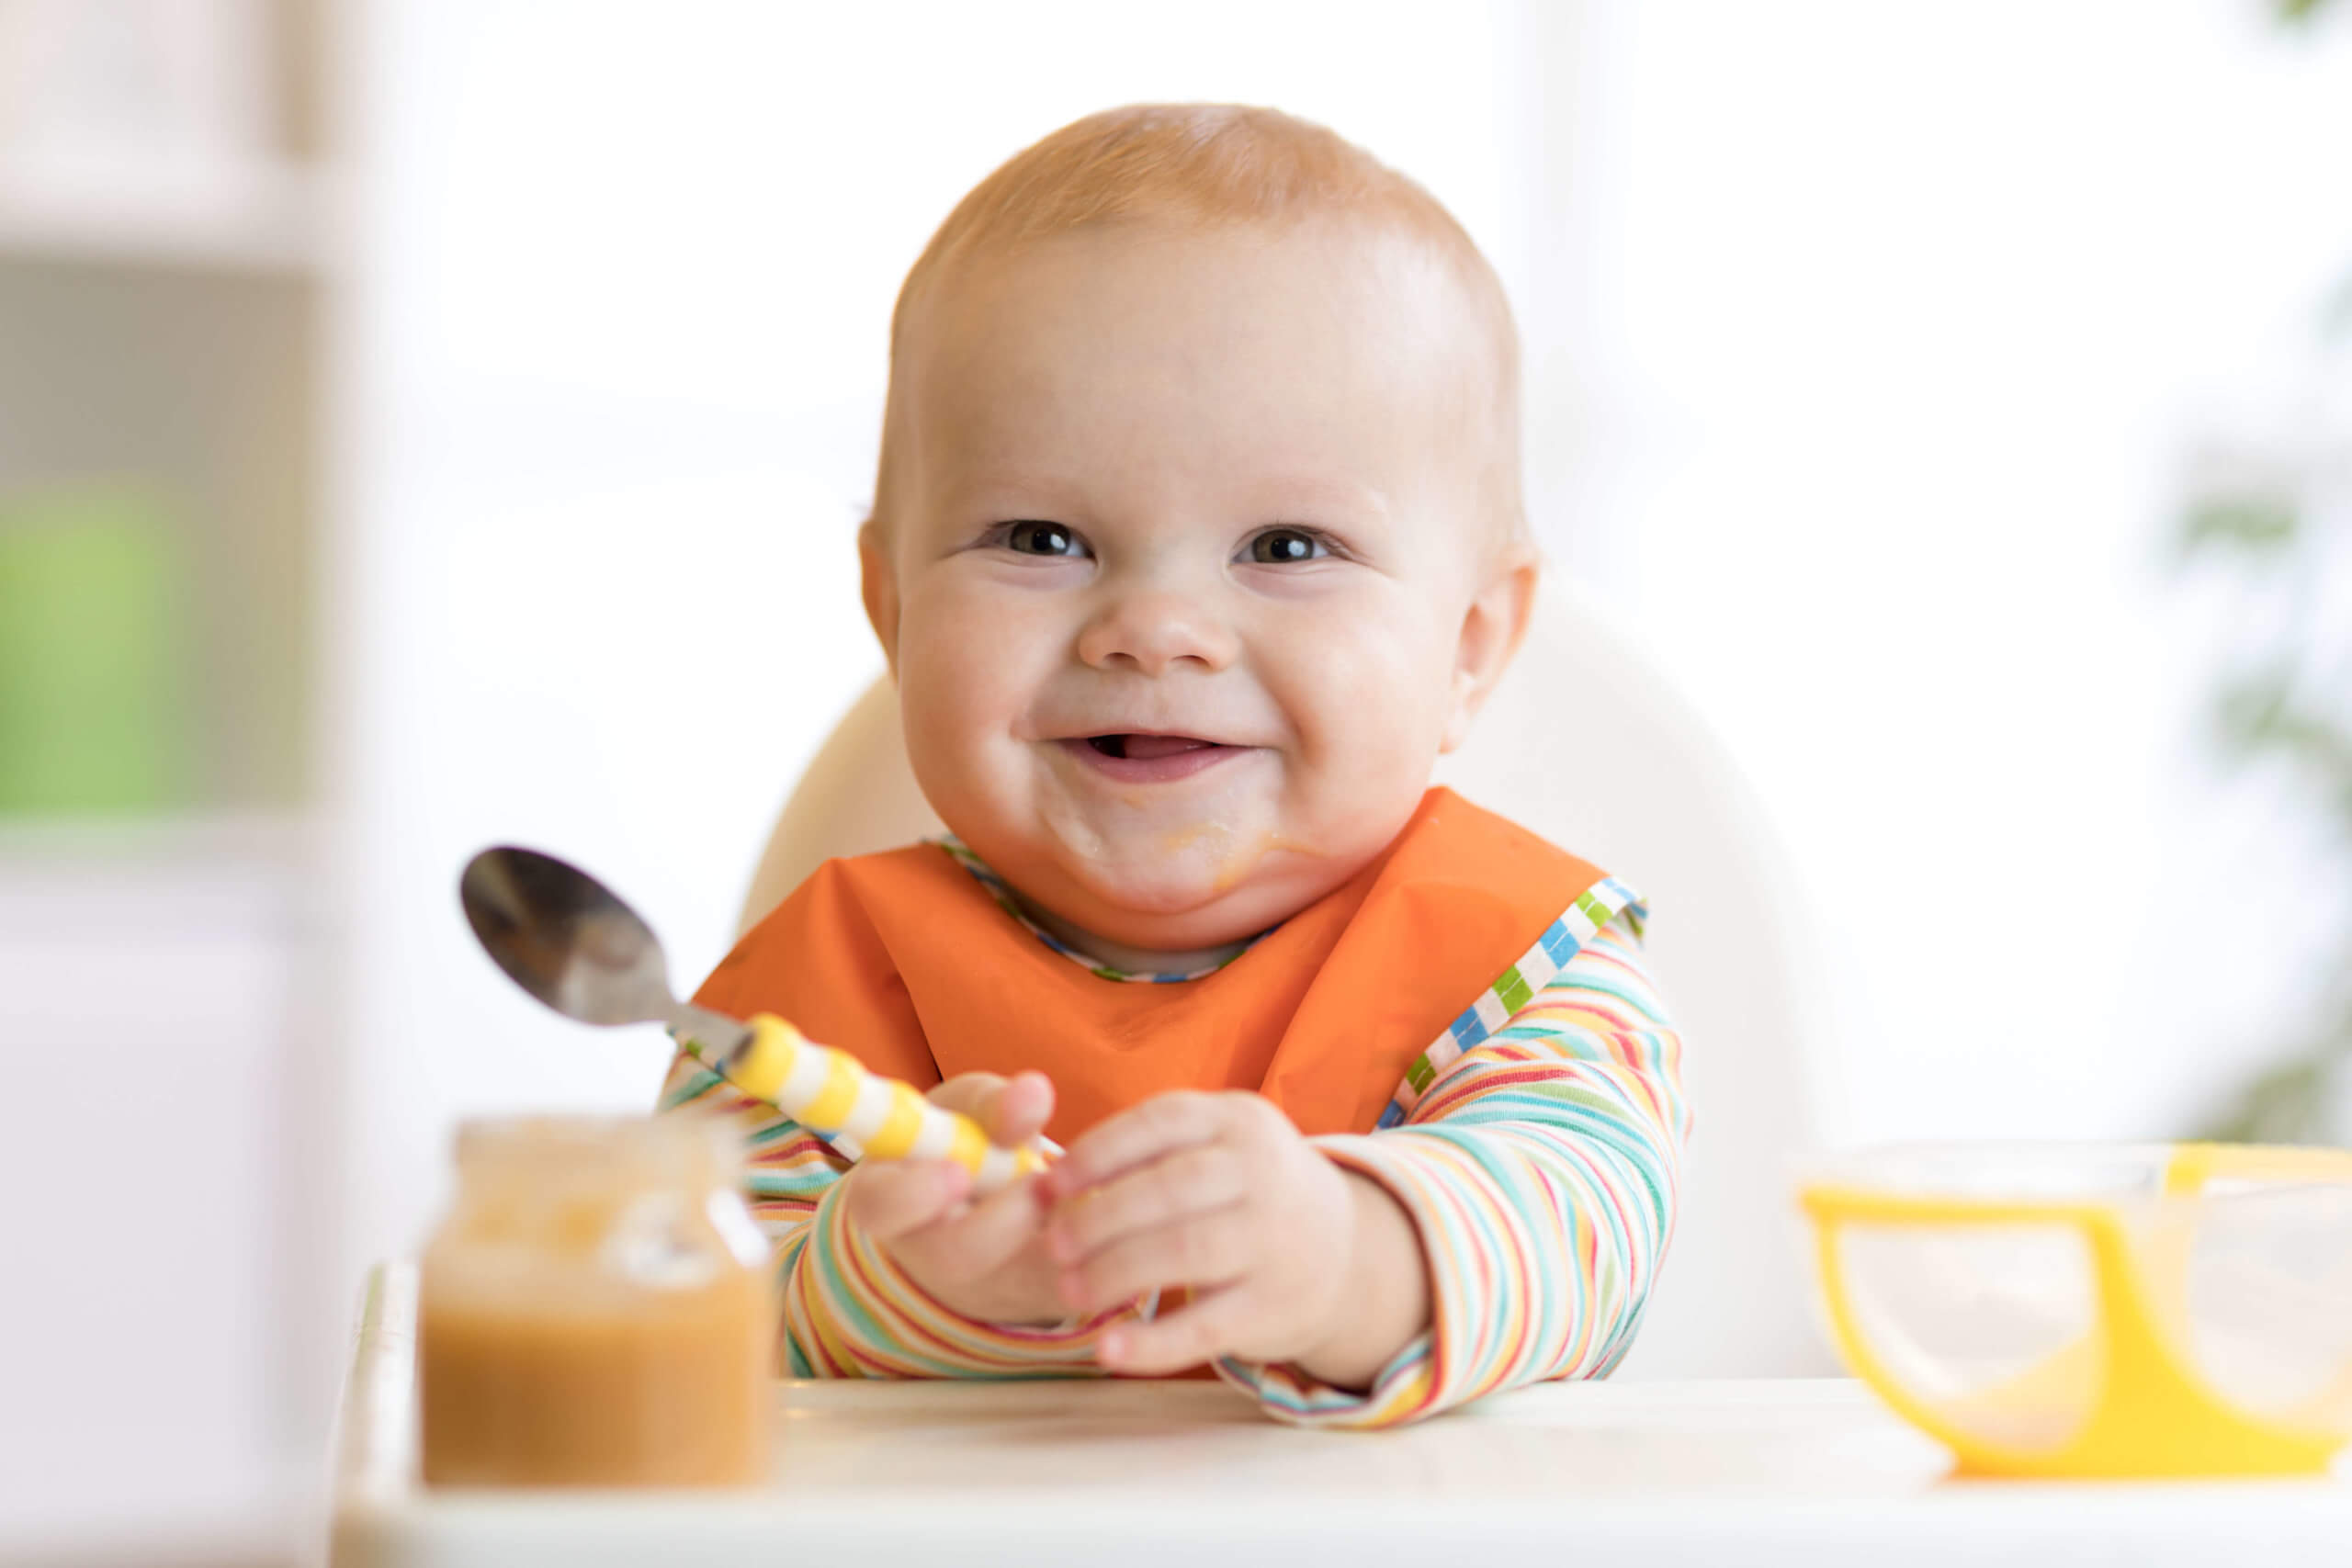 Je doma připravované jídlo vždy zdravější než kupované příkrmy určené pro kojence?